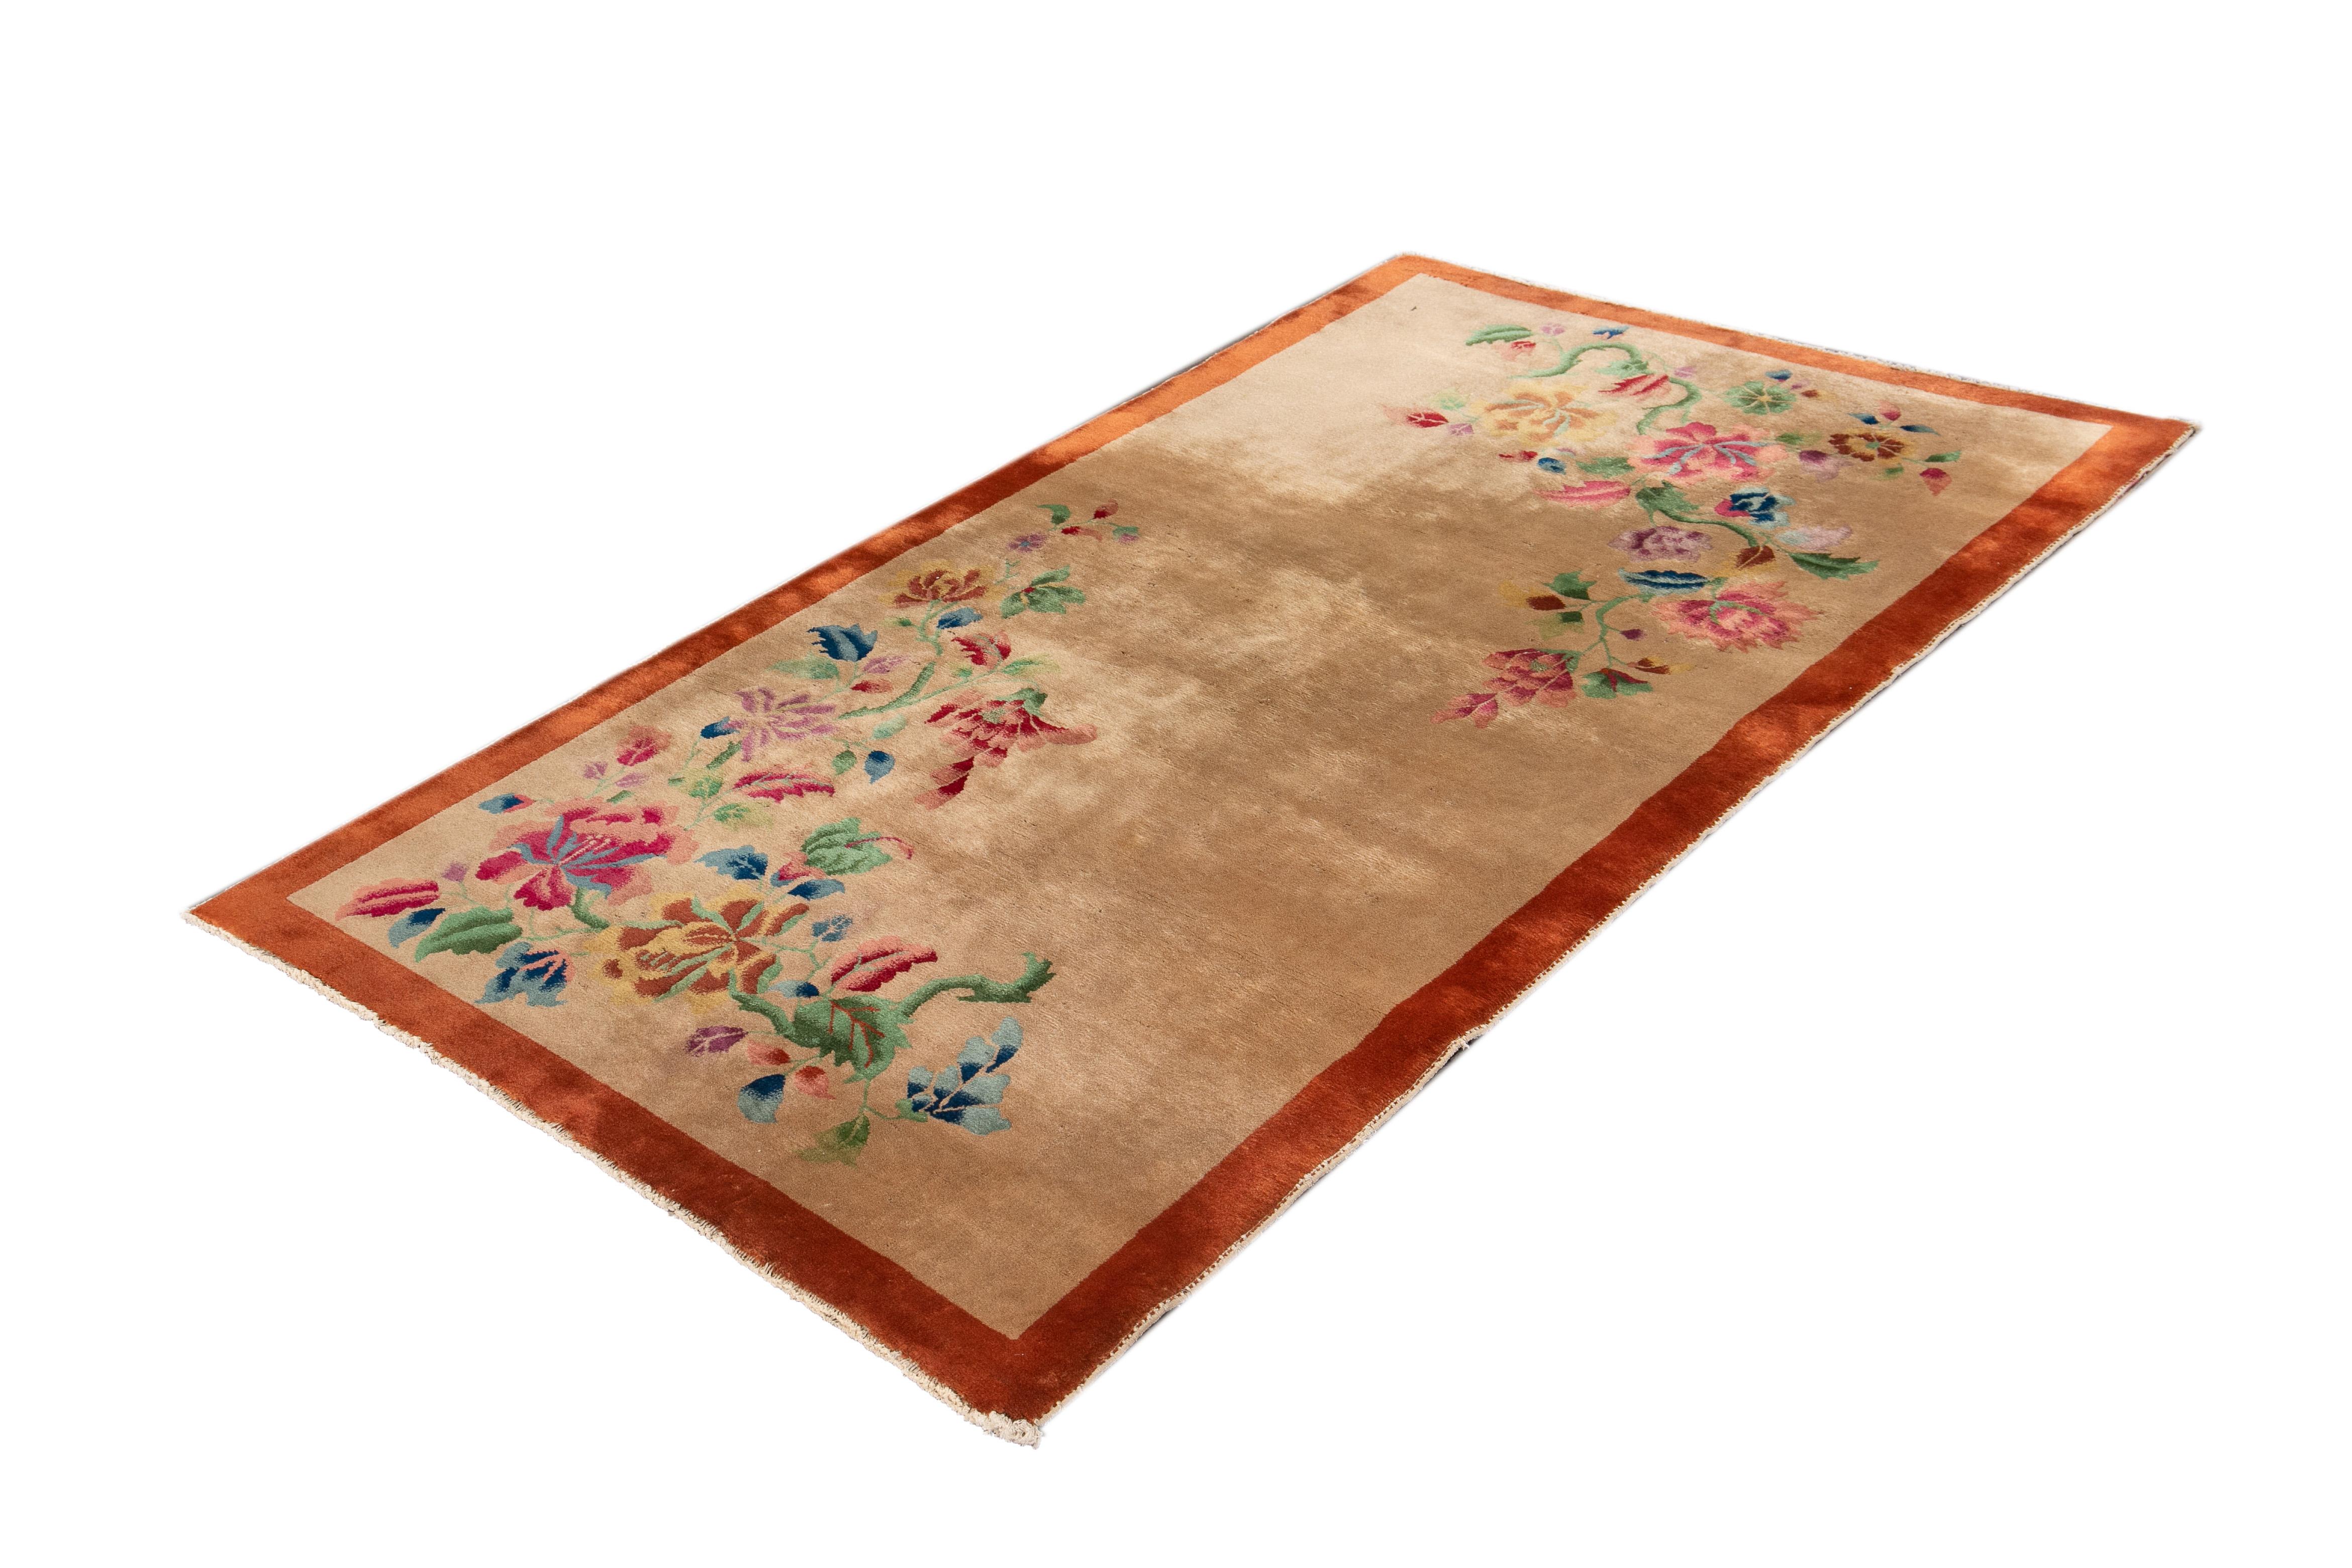 Schöner antiker chinesischer Art-Déco-Teppich mit beigem Feld und orangefarbener Bordüre mit mehrfarbigen Akzenten und einem floralen Gesamtmuster. 

Dieser Teppich misst 4' 0